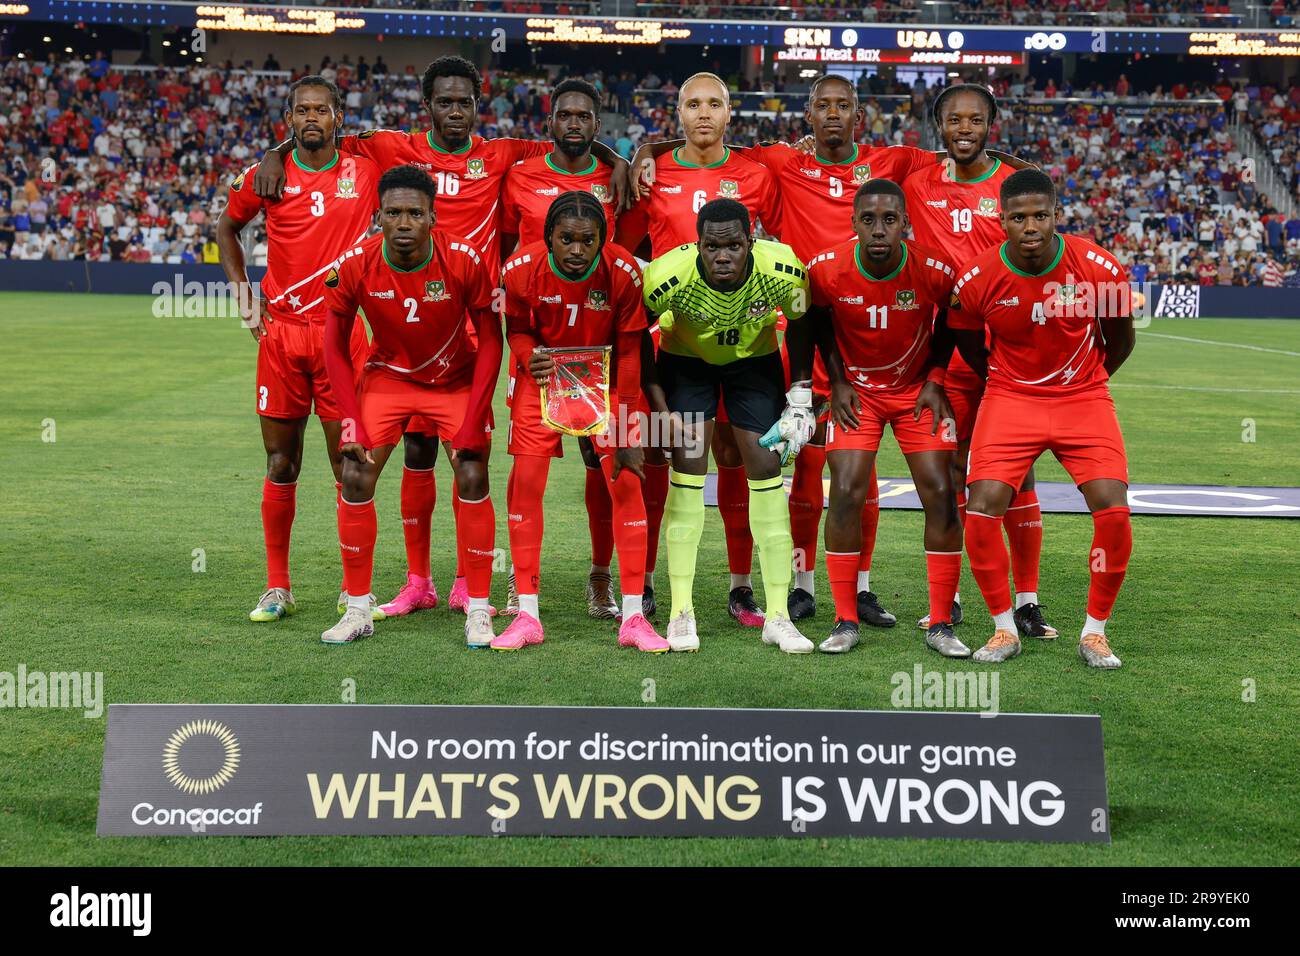 St. Louis, Missouri. Etats-Unis; l'équipe St Kitts-et-Nevis pose pour une photo avant un match de la coupe d'or de la CONCACAF contre les Etats-Unis mercredi, 28 juin 2023 Banque D'Images